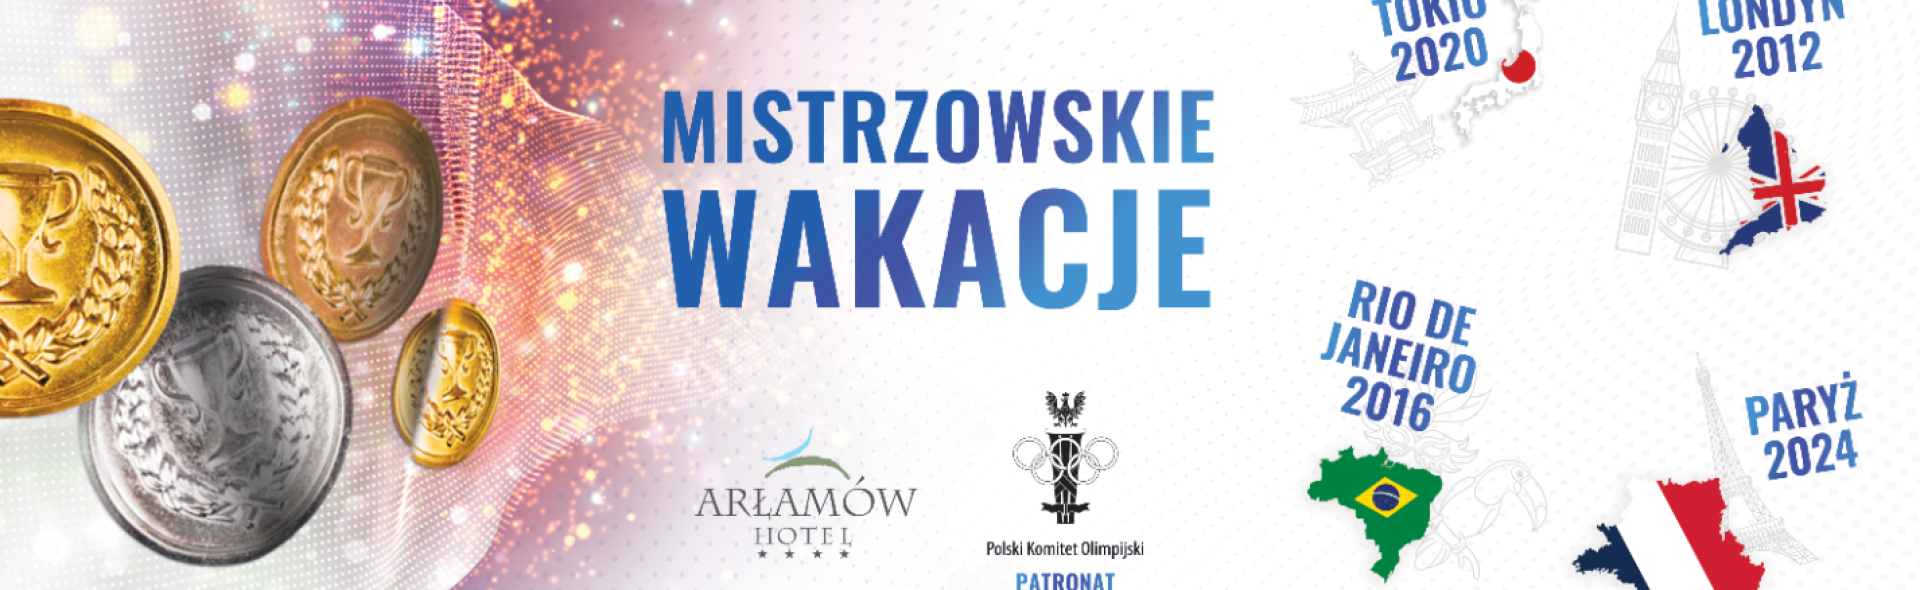 Mistrzowskie Wakacje w Hotelu Arłamów z patronatem Polskiego Komitetu Olimpijskiego